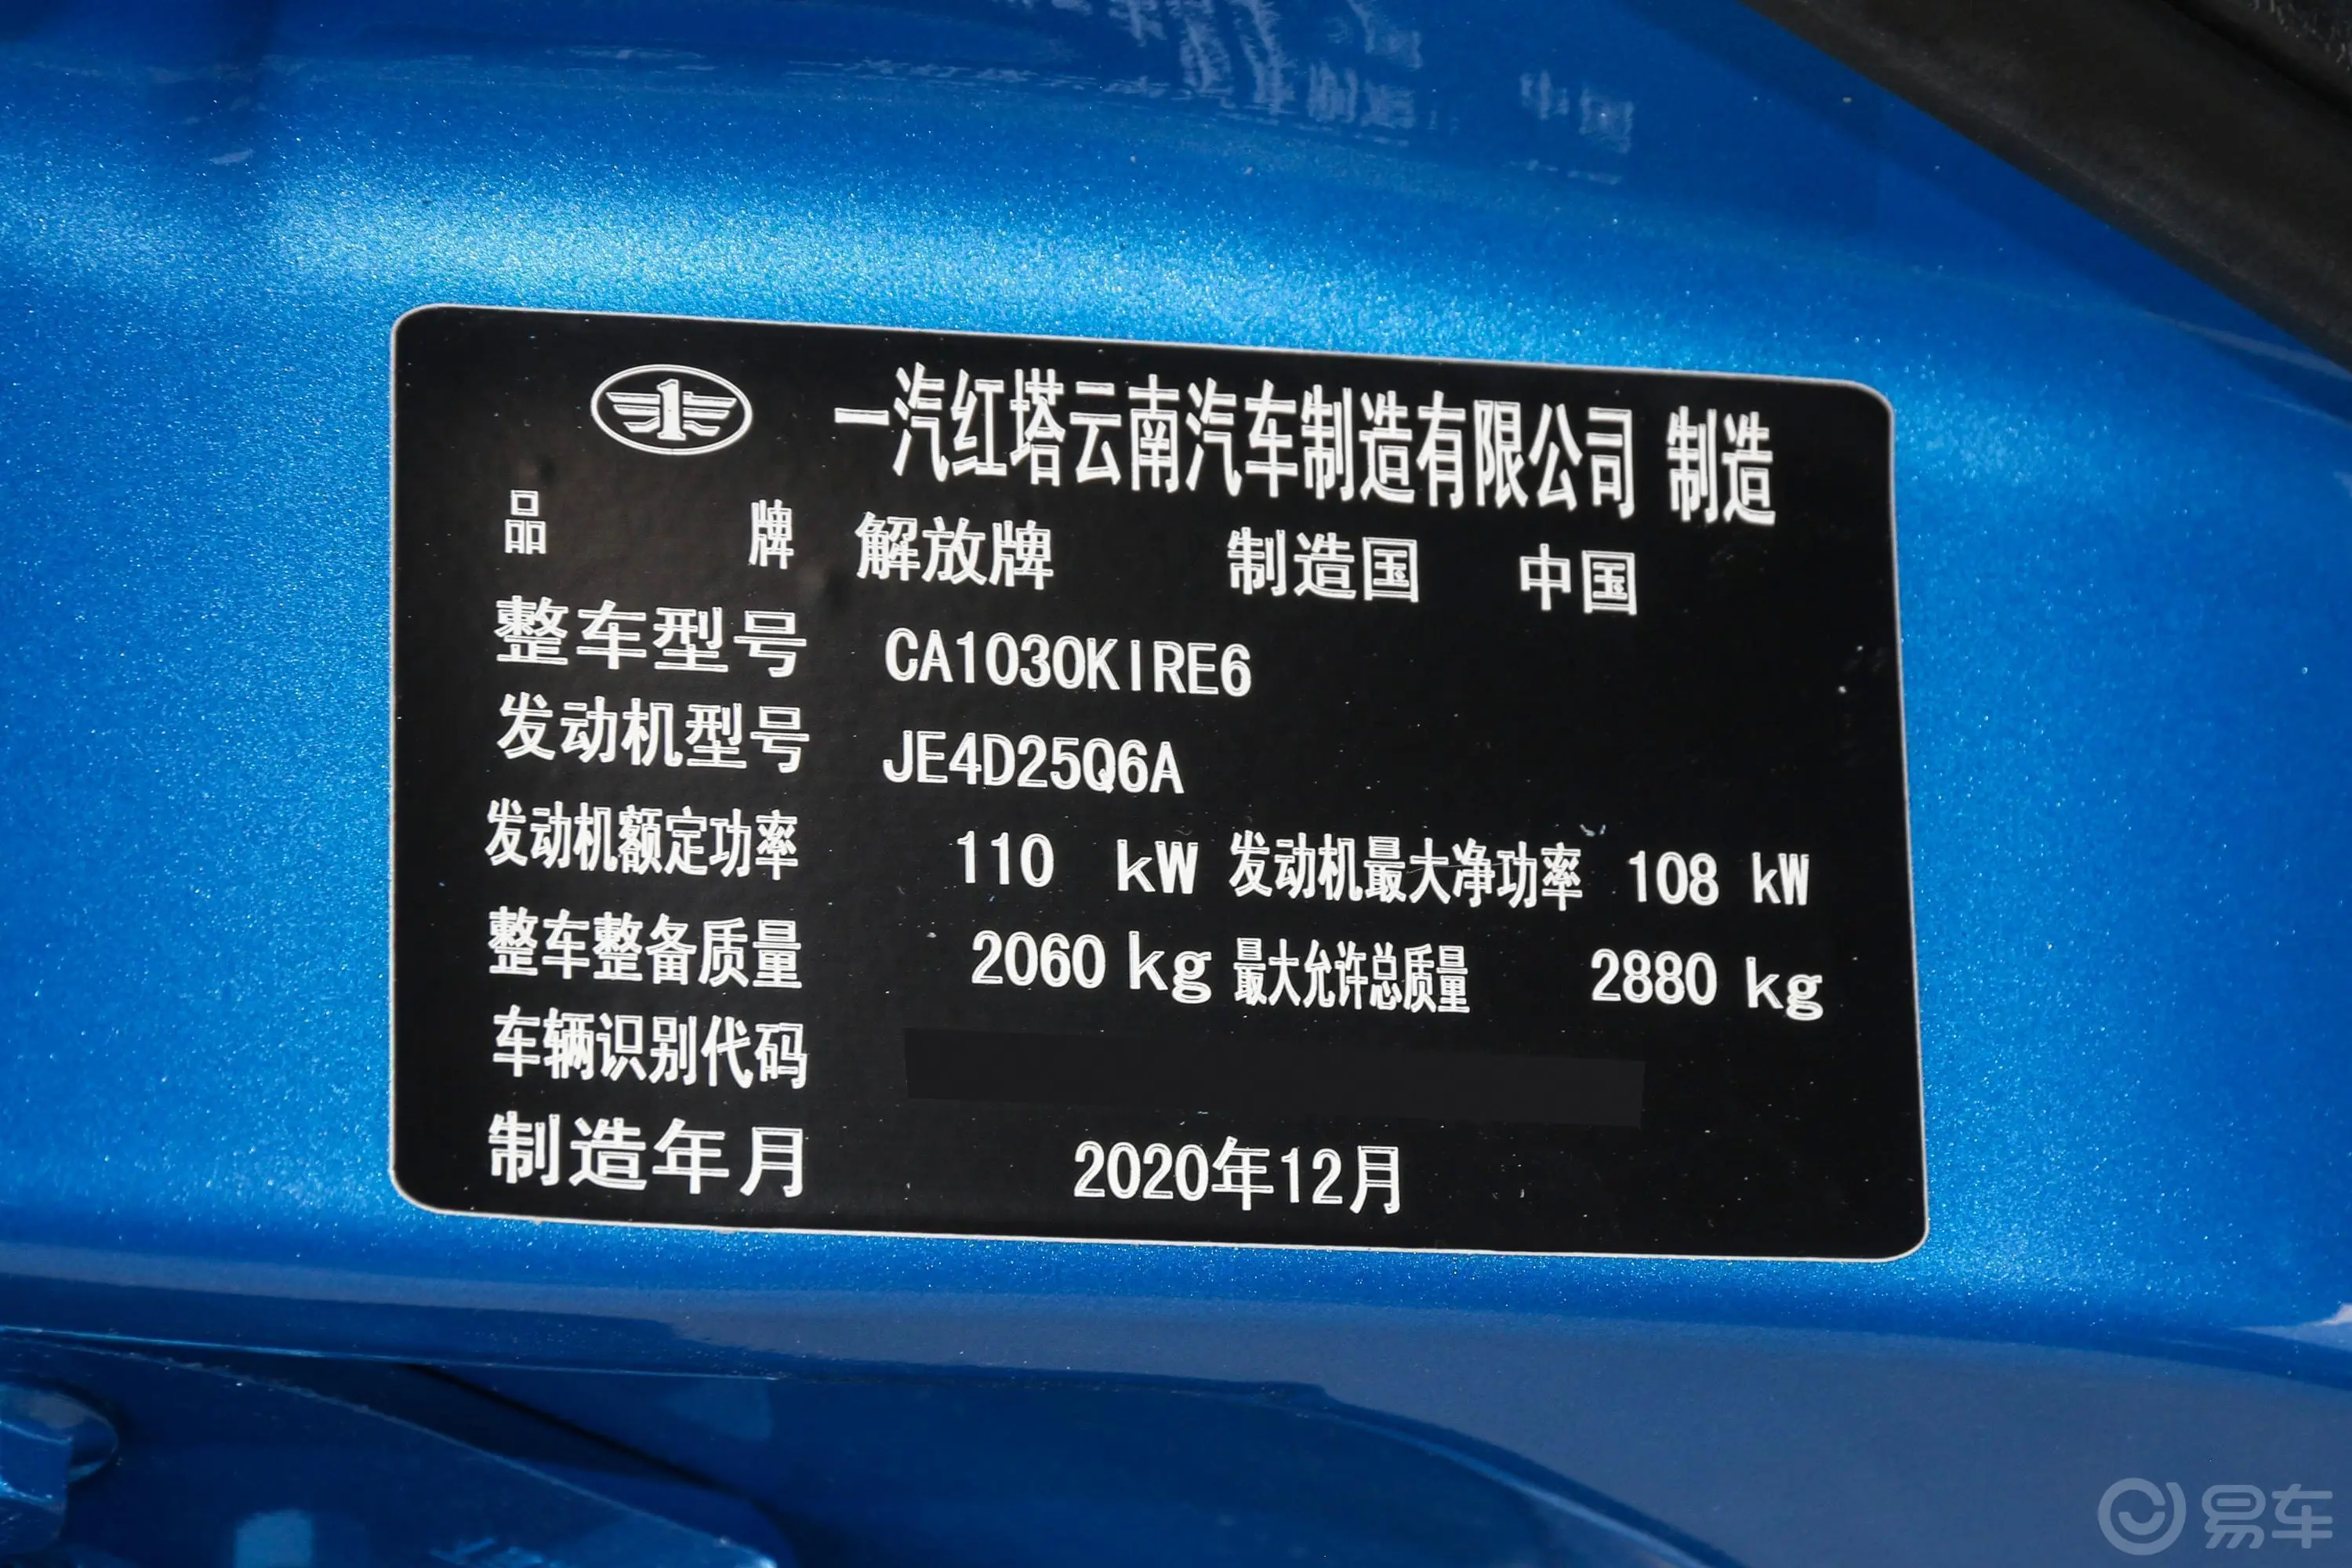 一汽蓝舰H62.5T 两驱 长轴 标准型JE4D25Q6A 柴油车辆信息铭牌